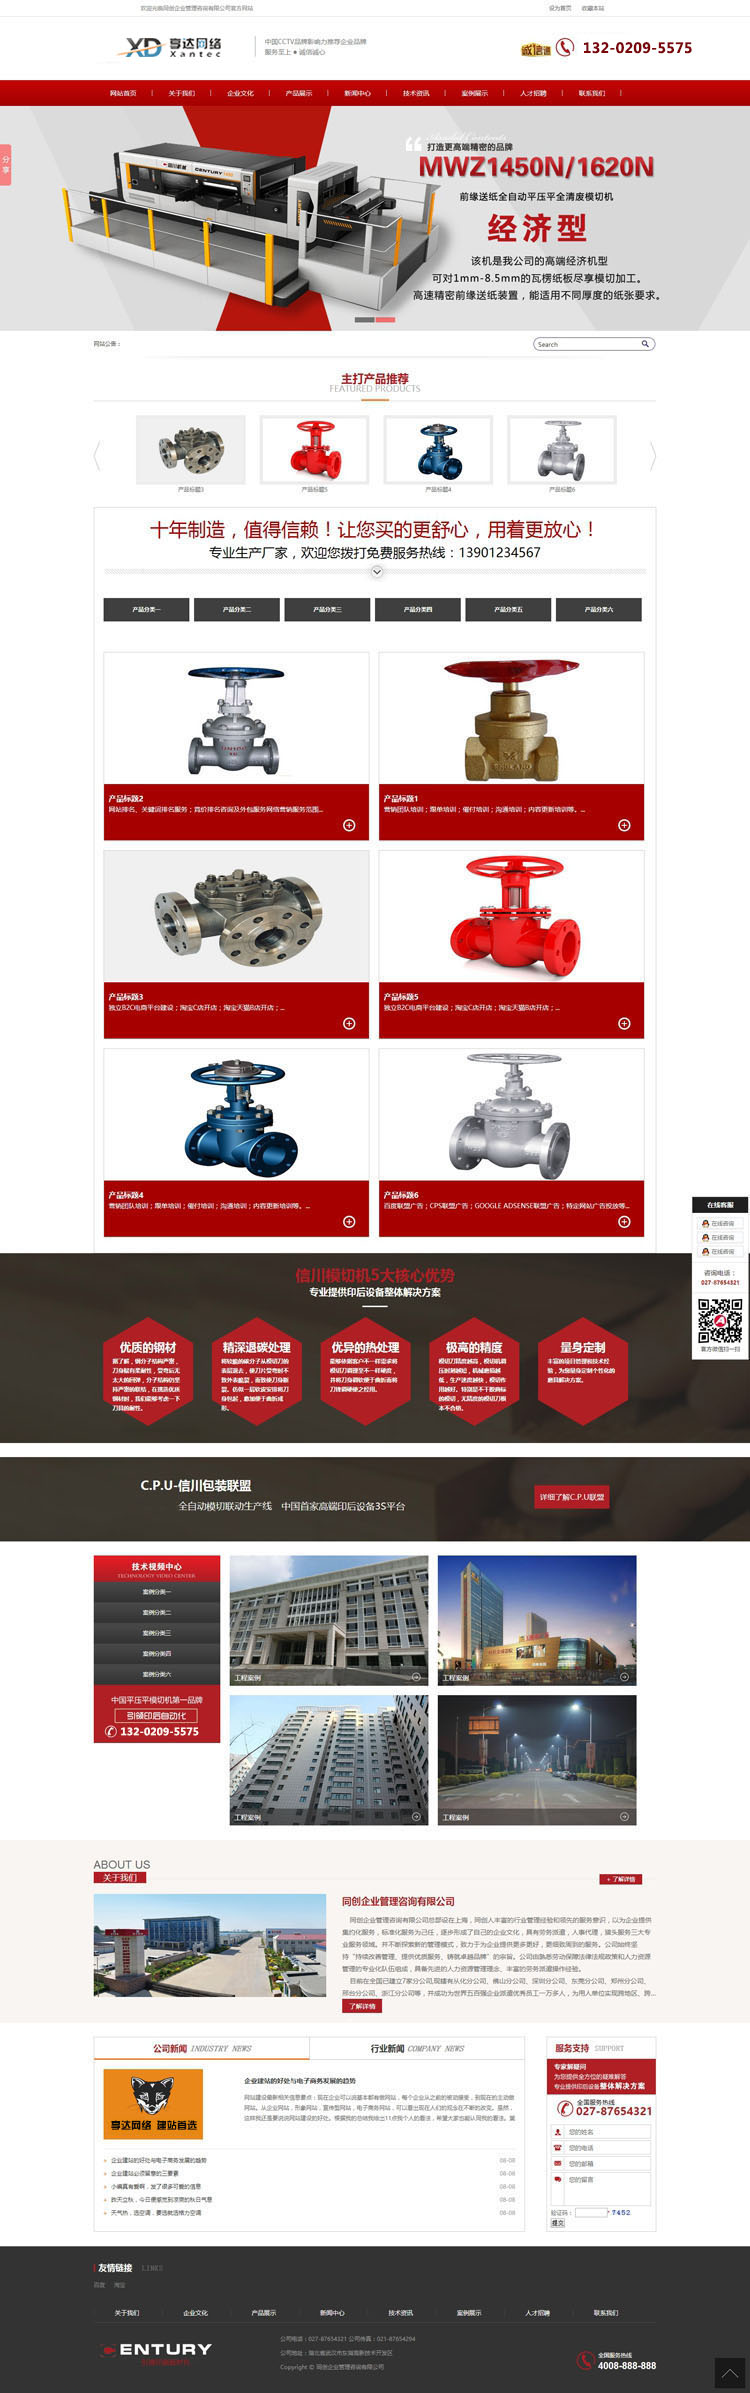 机械设备销售公司网站定制 | 工程机械生产企业网站制作图片